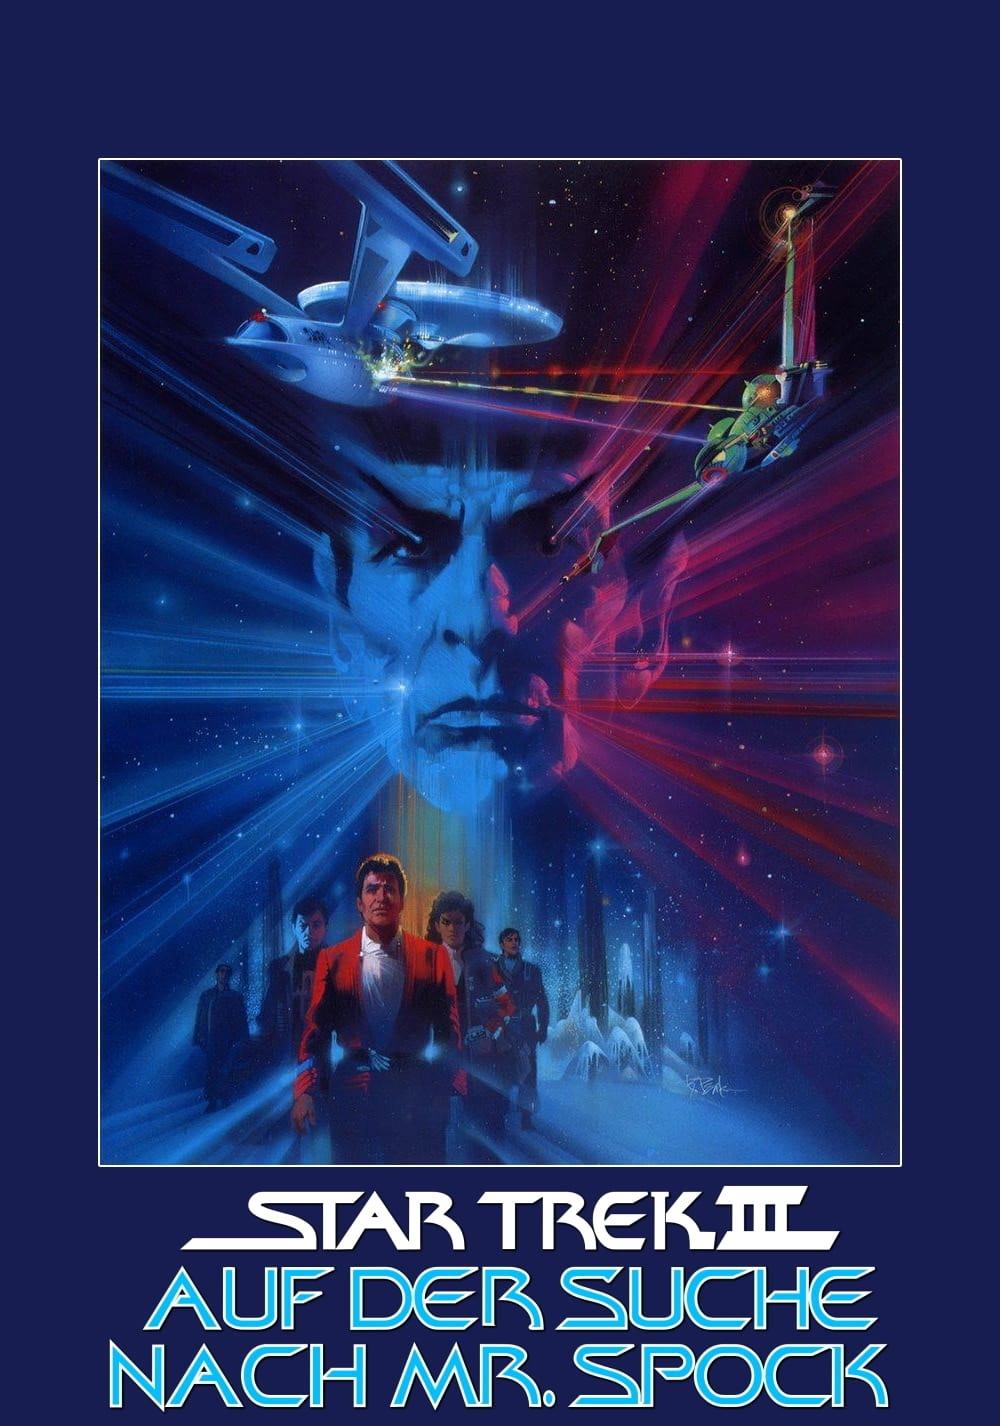 Star Trek III - Auf der Suche nach Mr. Spock poster